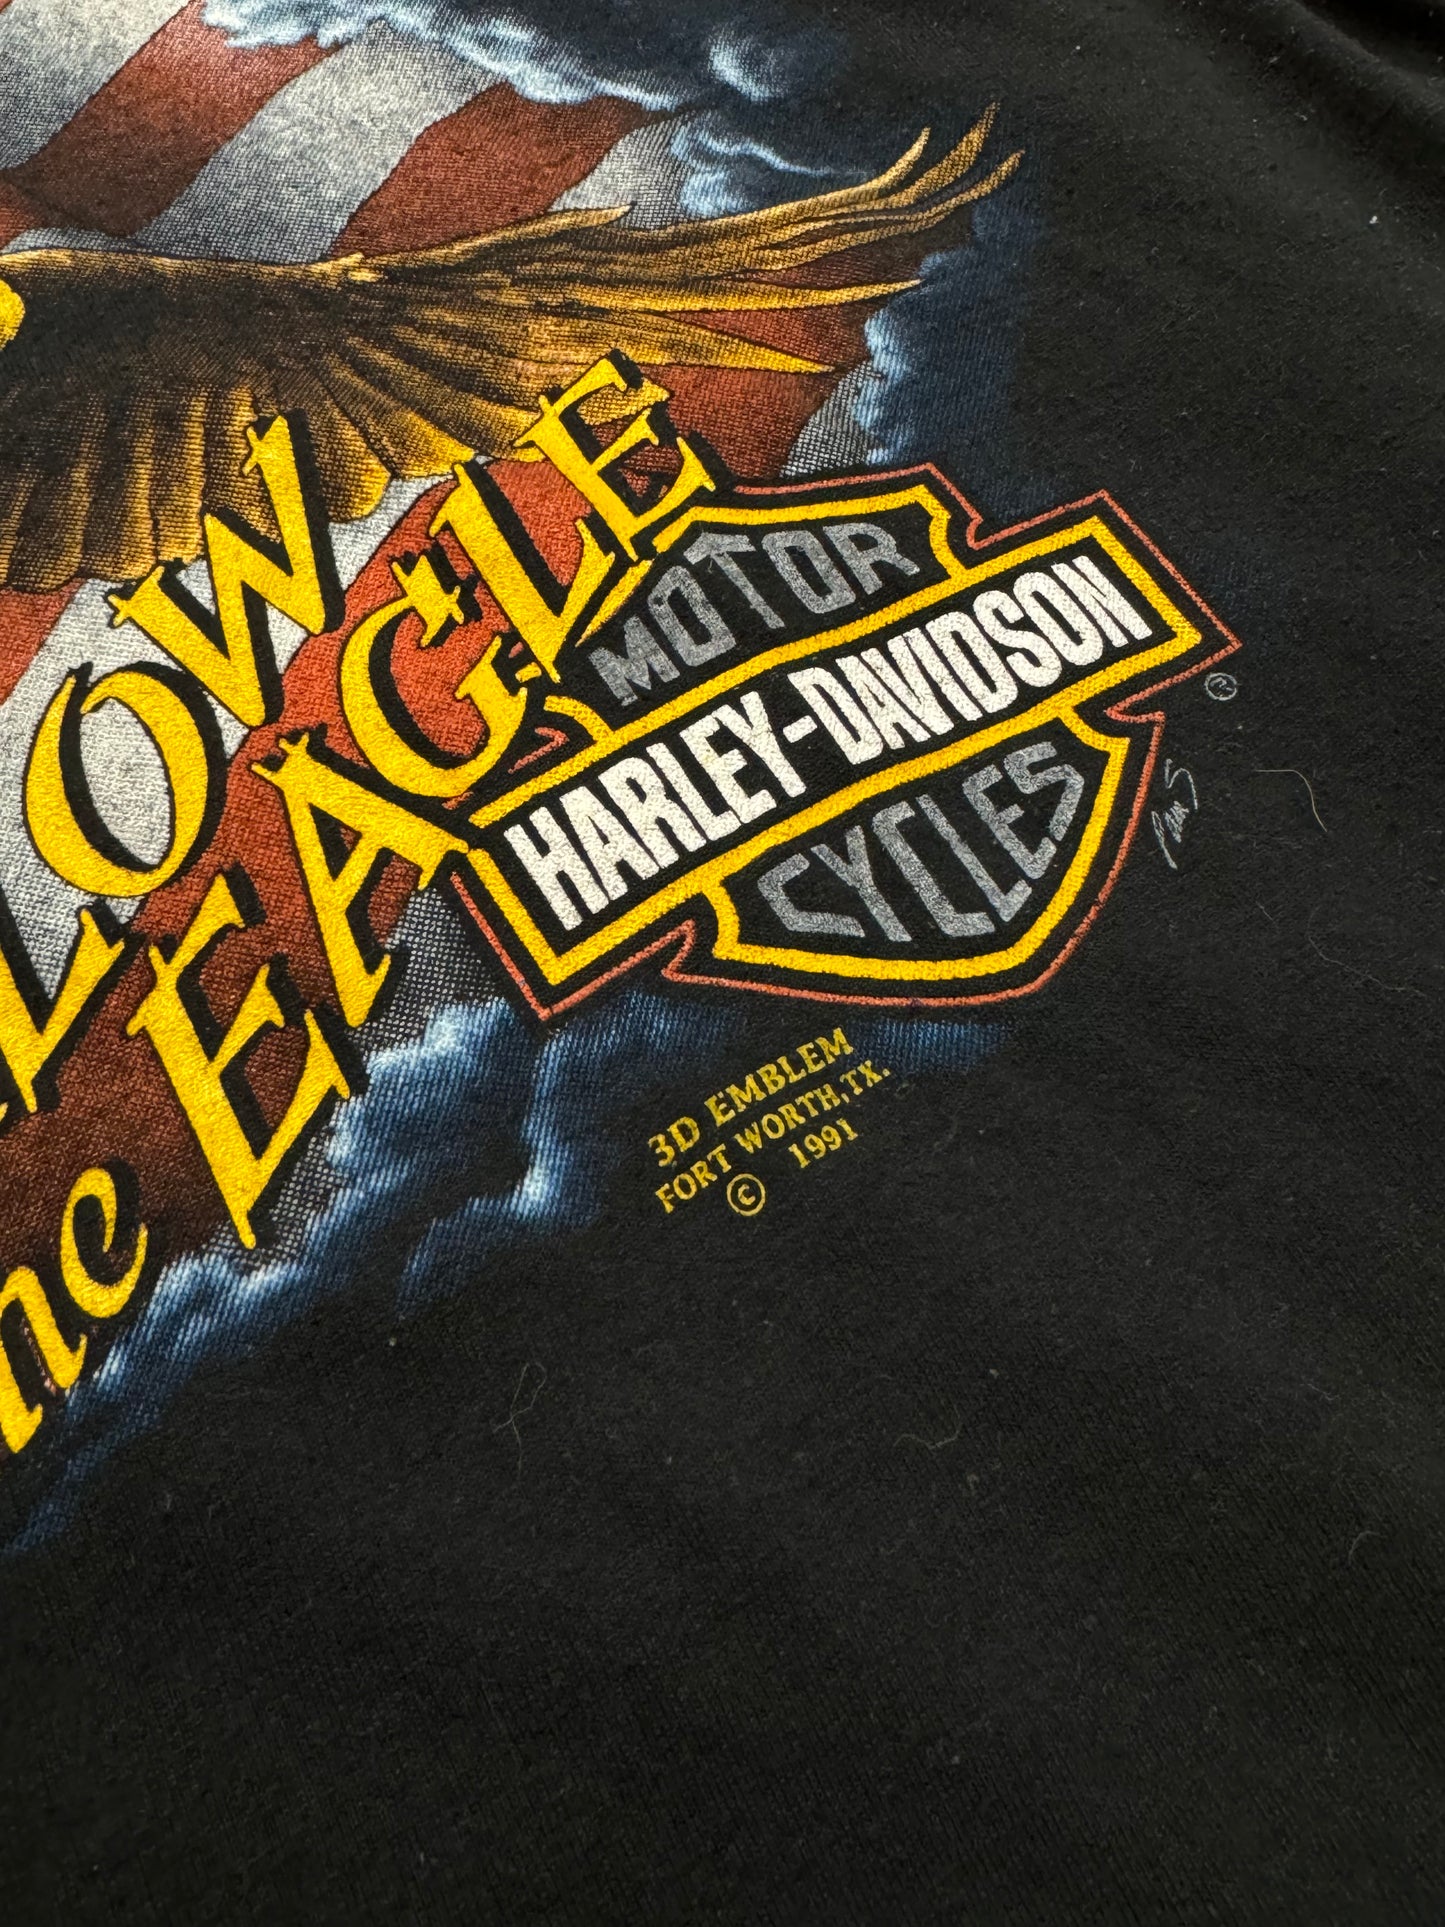 1991 Harley Davidson Follow The Eagle 3D emblem Tee Size XL